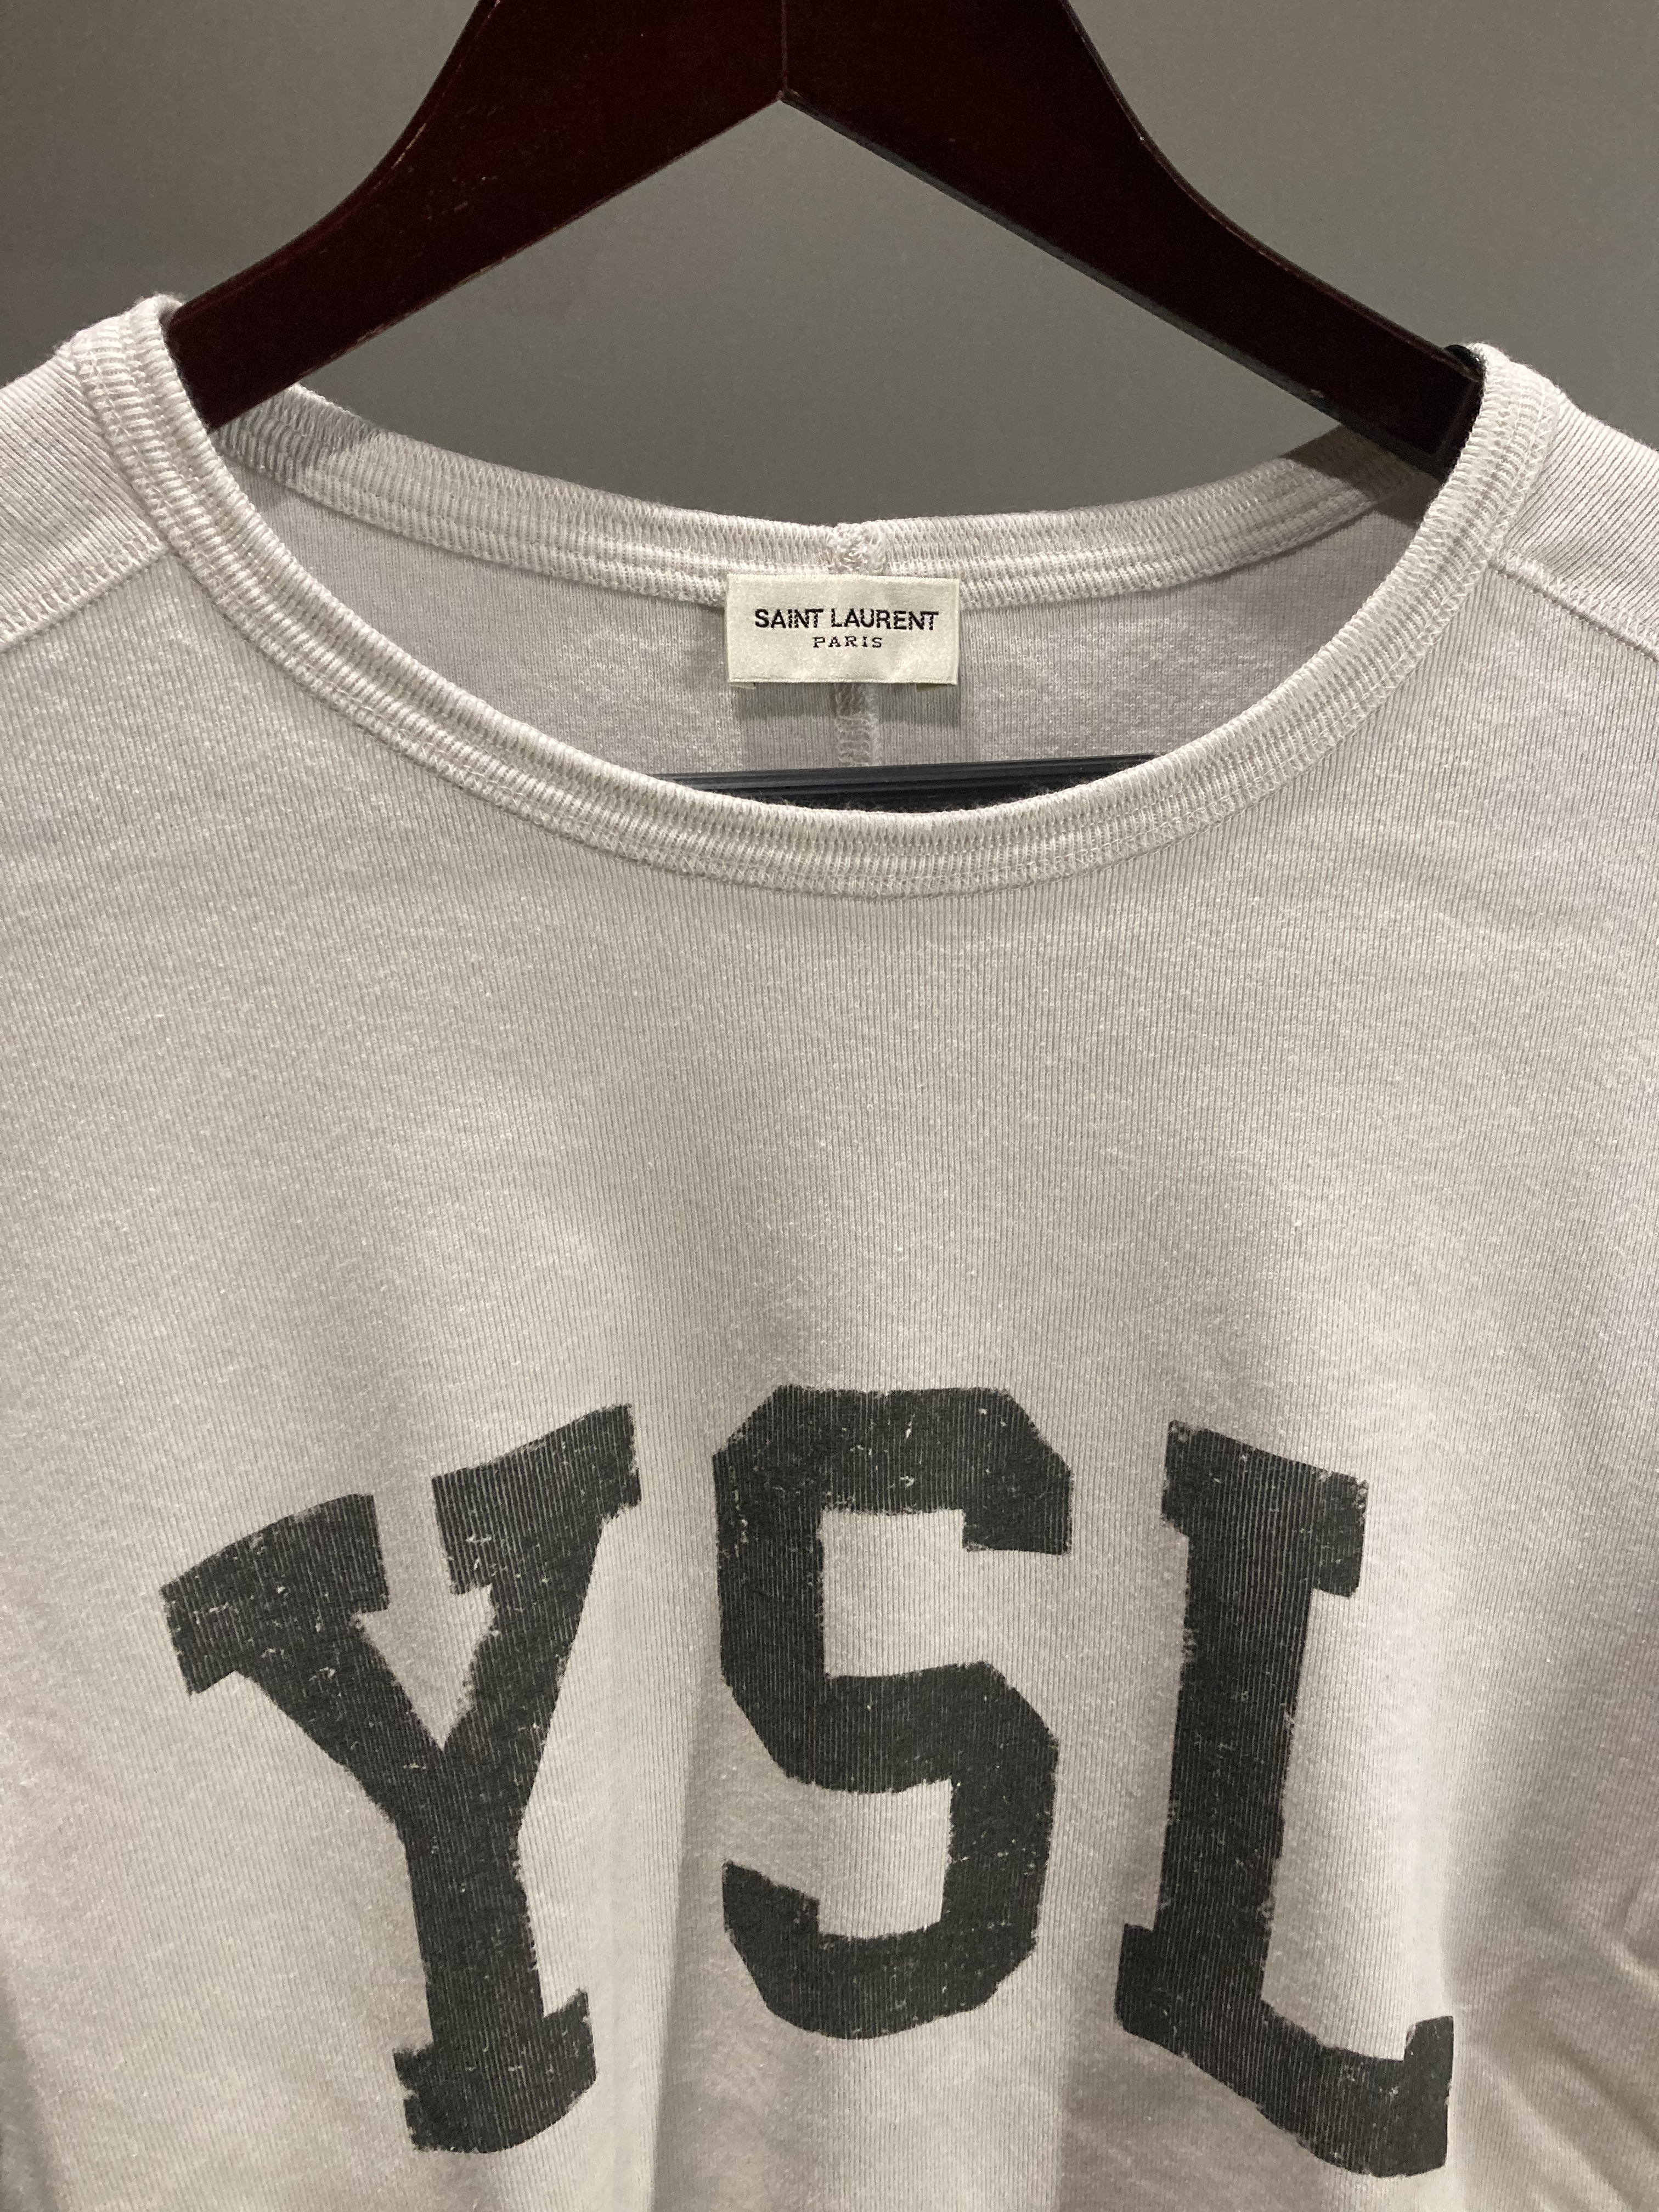 SAINT LAURENT Saint Laurent YSL Vintage T-shirt Dirty Ecru Size S 